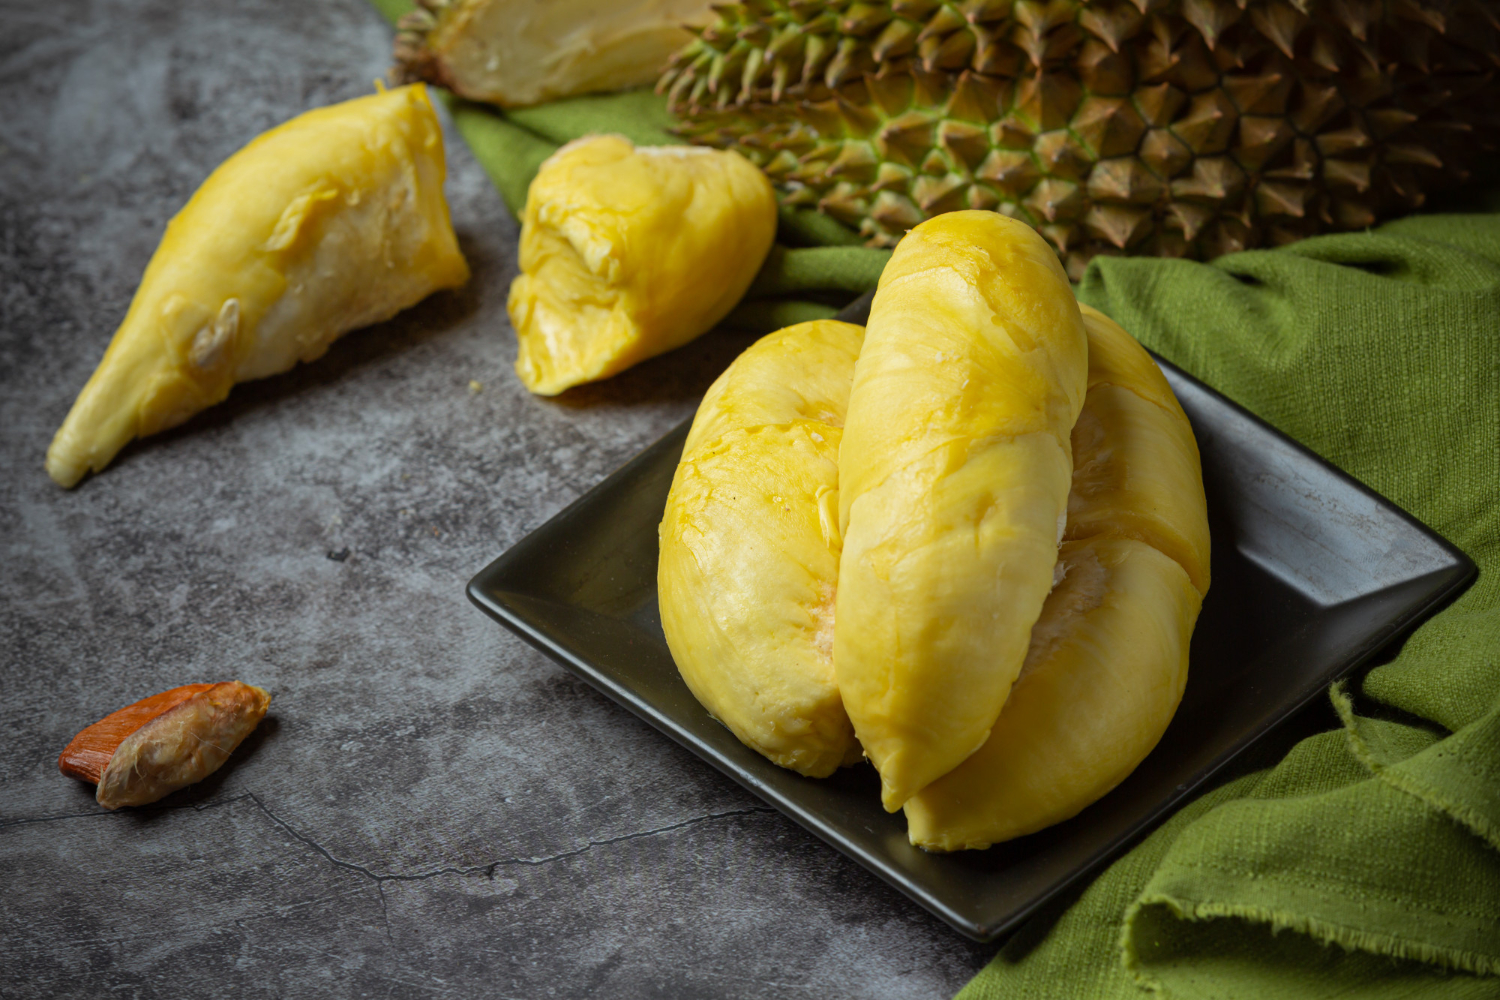 Apa Saja Sih Resep Jajanan Sehat dan Lezat dari Buah Durian? Yuk Intip Beragam Resep yang Bisa Kamu Coba